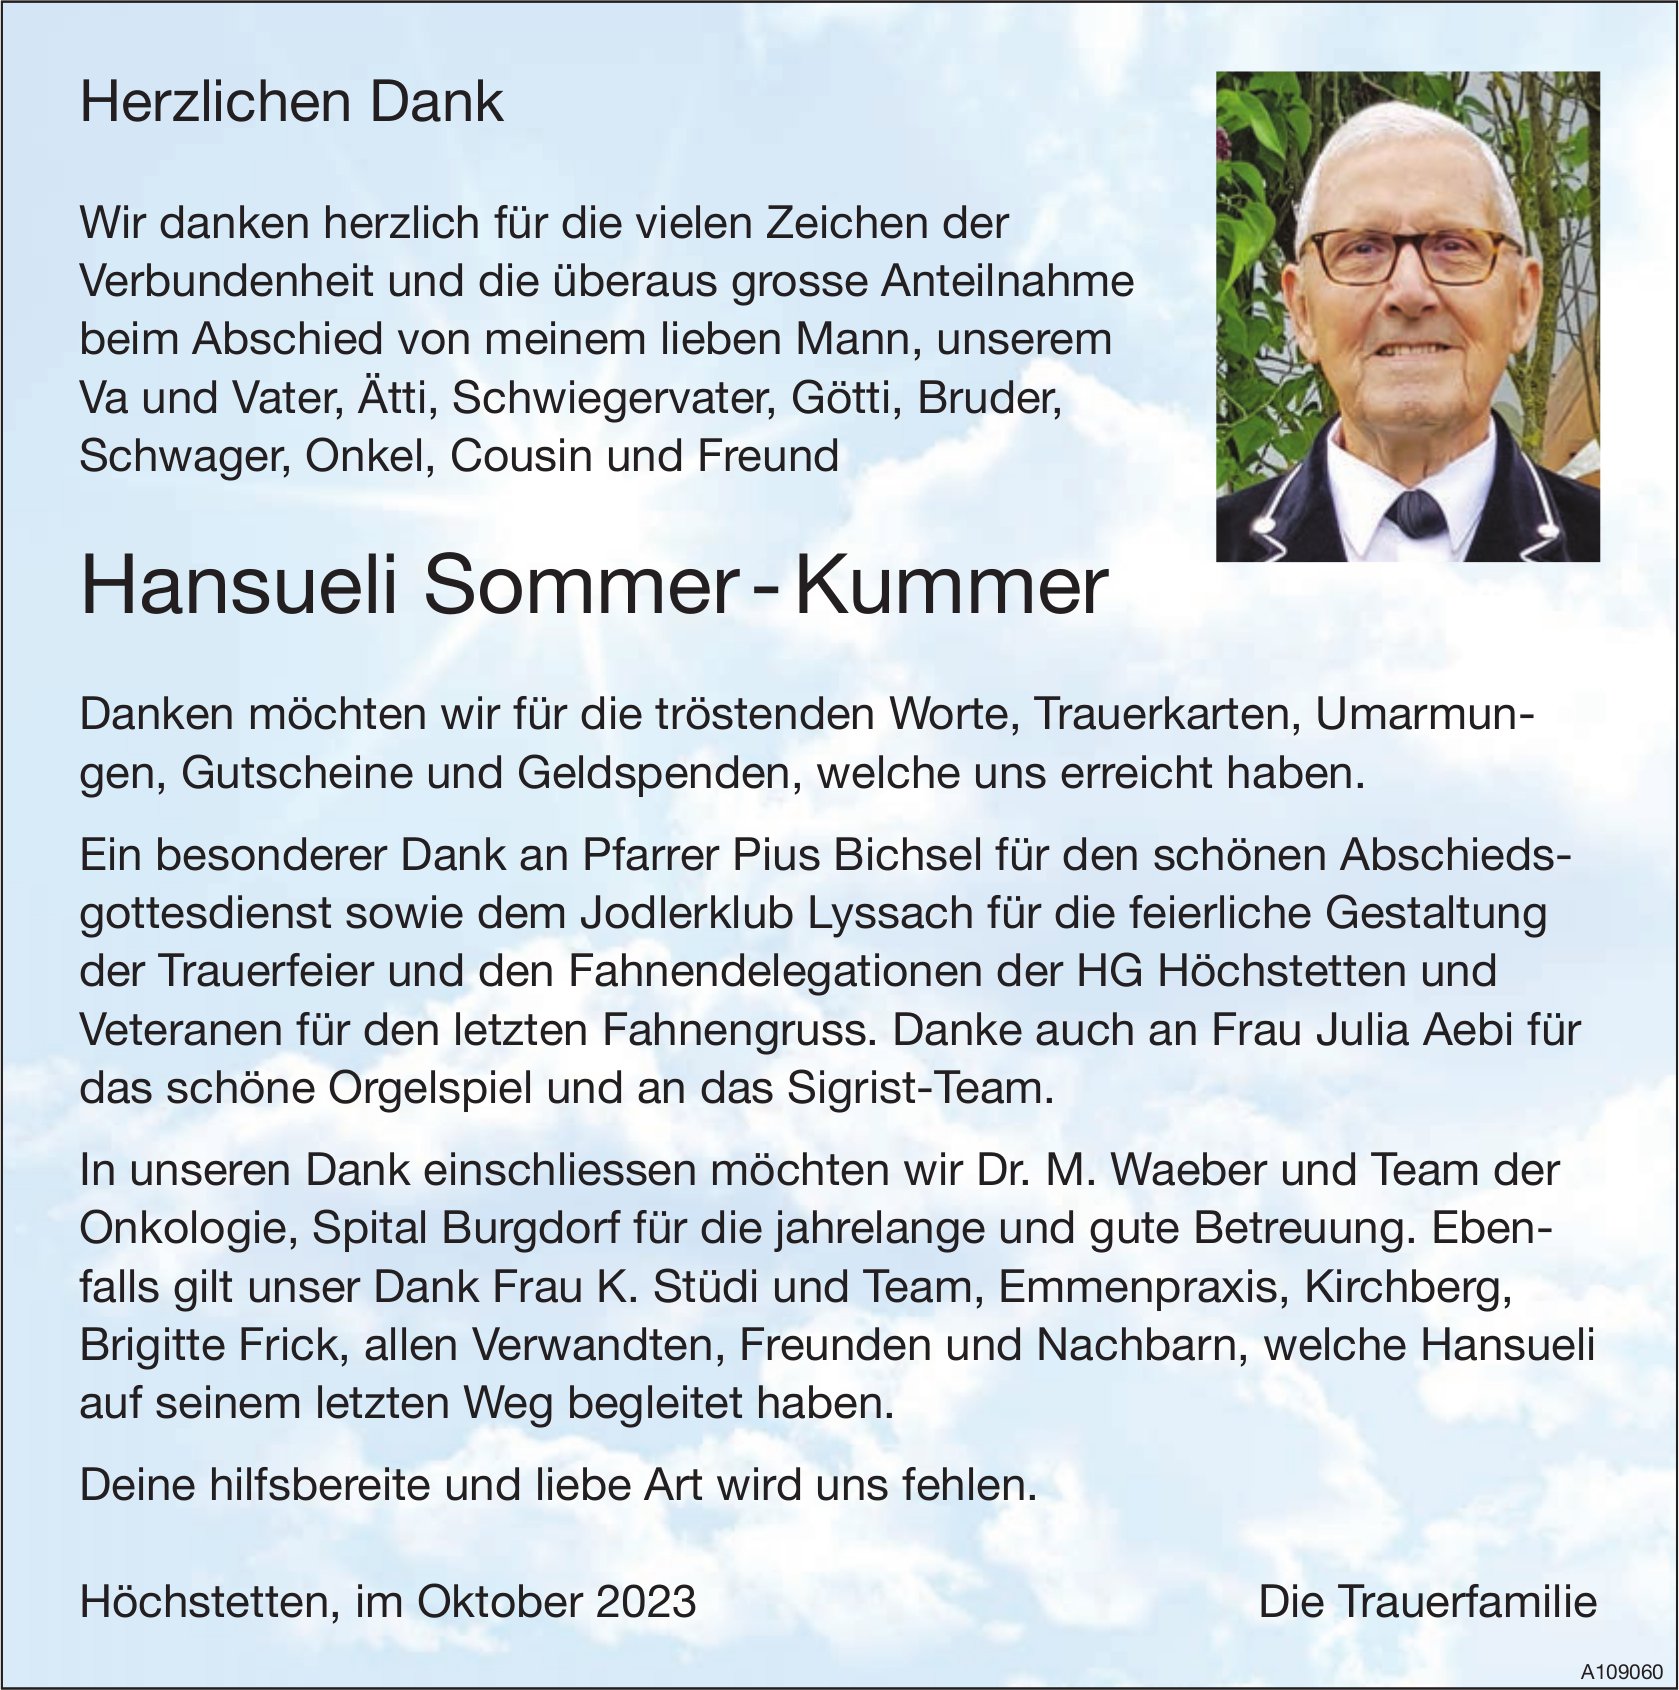 Hansueli Sommer - Kummer, im Oktober 2023 / DS